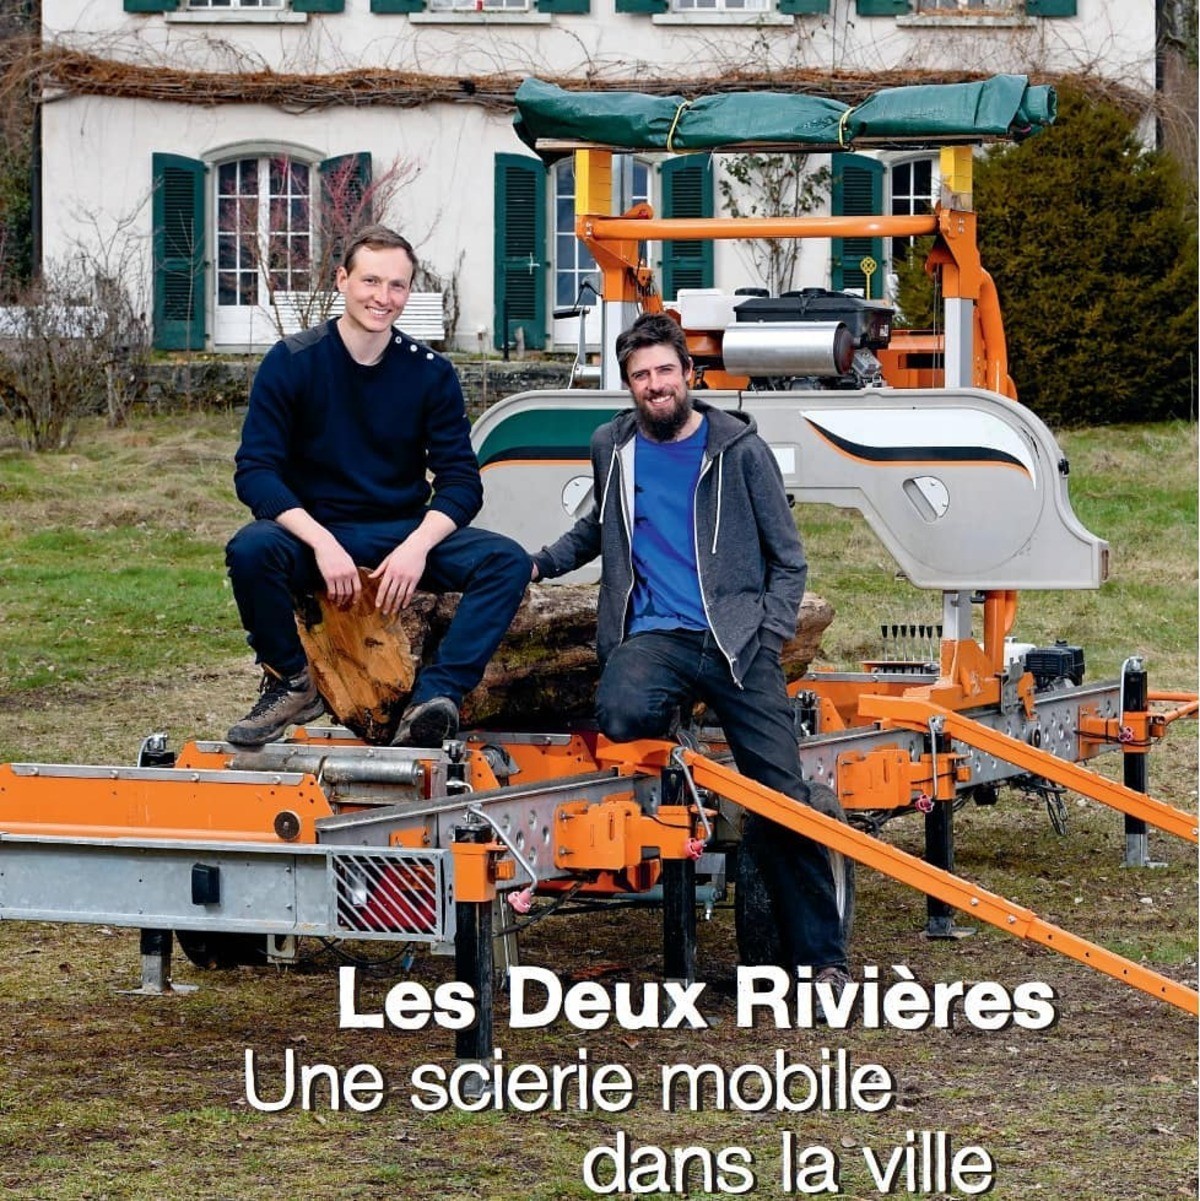 Une entreprise de scierie mobile valorise le bois local à Genève